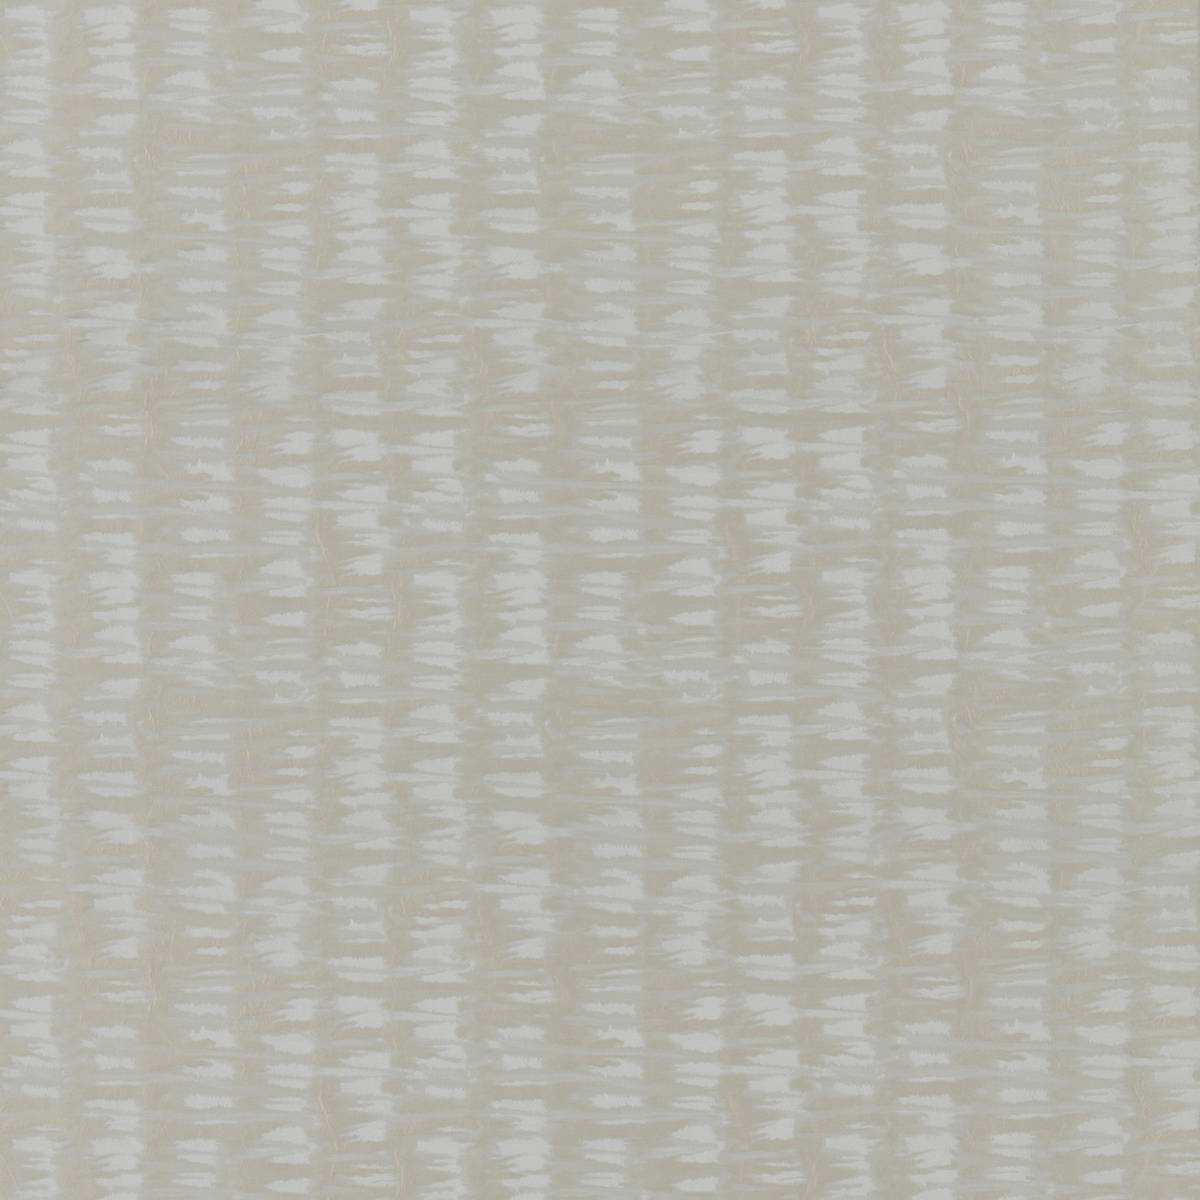 Mizu Stone Fabric by Harlequin